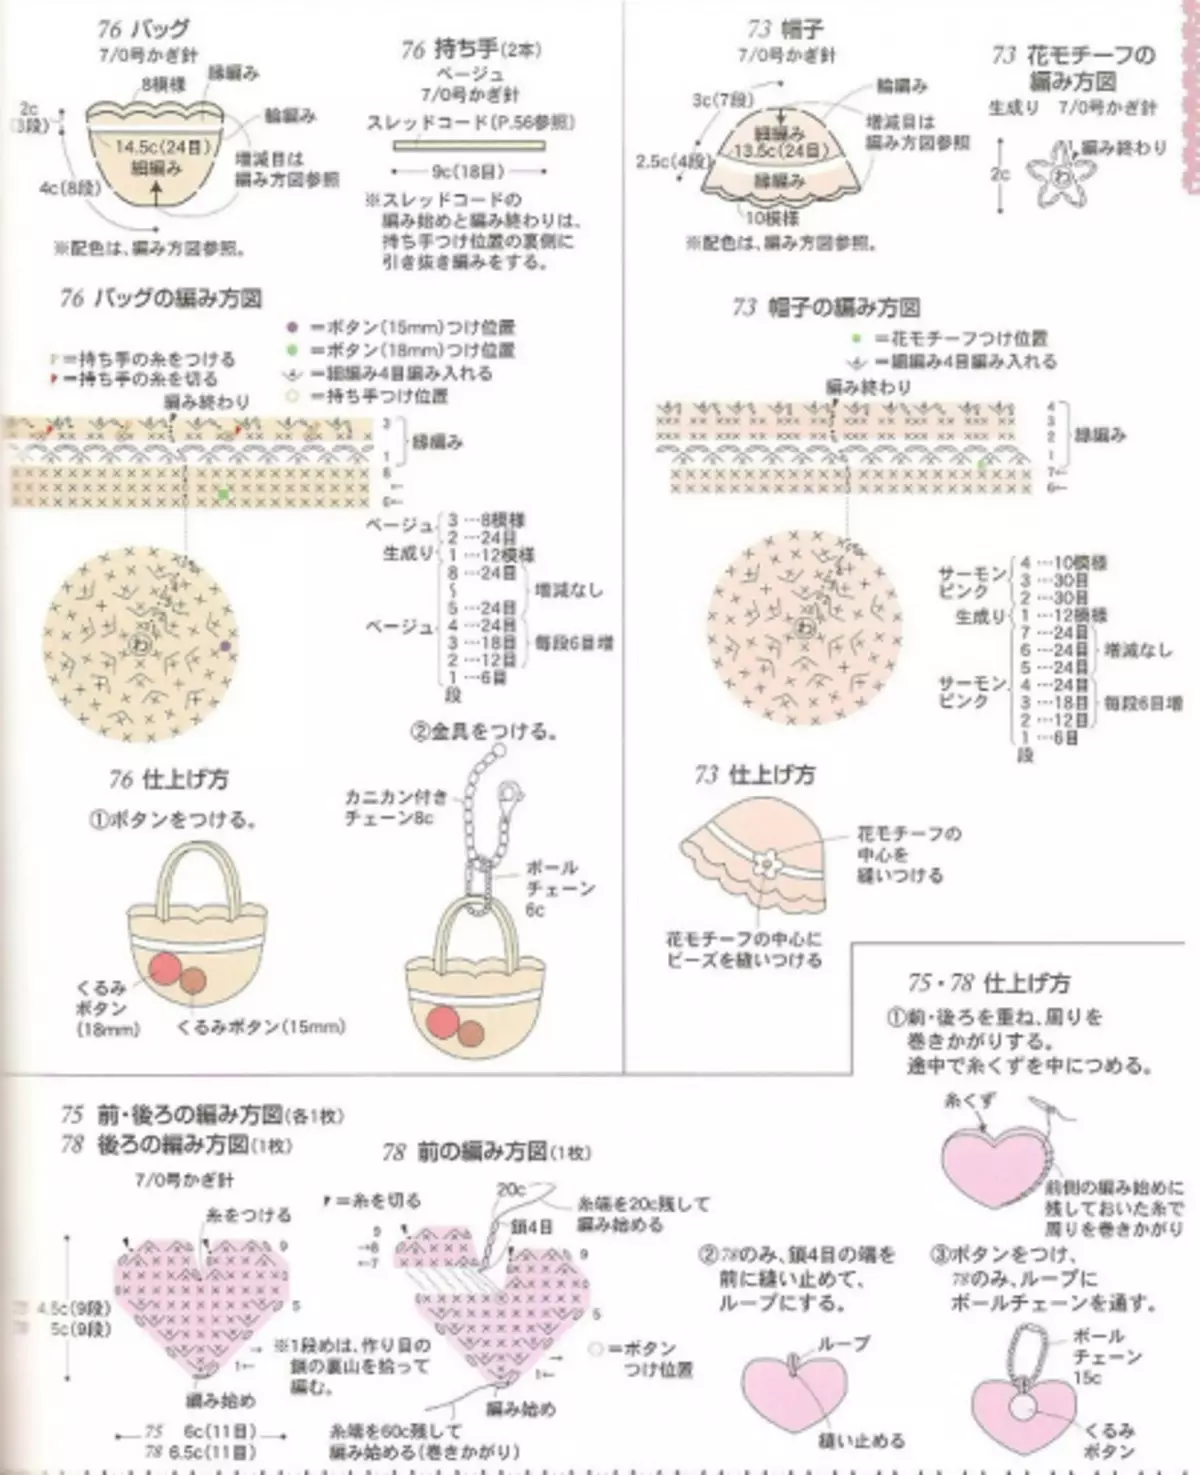 钩针方案的日本杂志